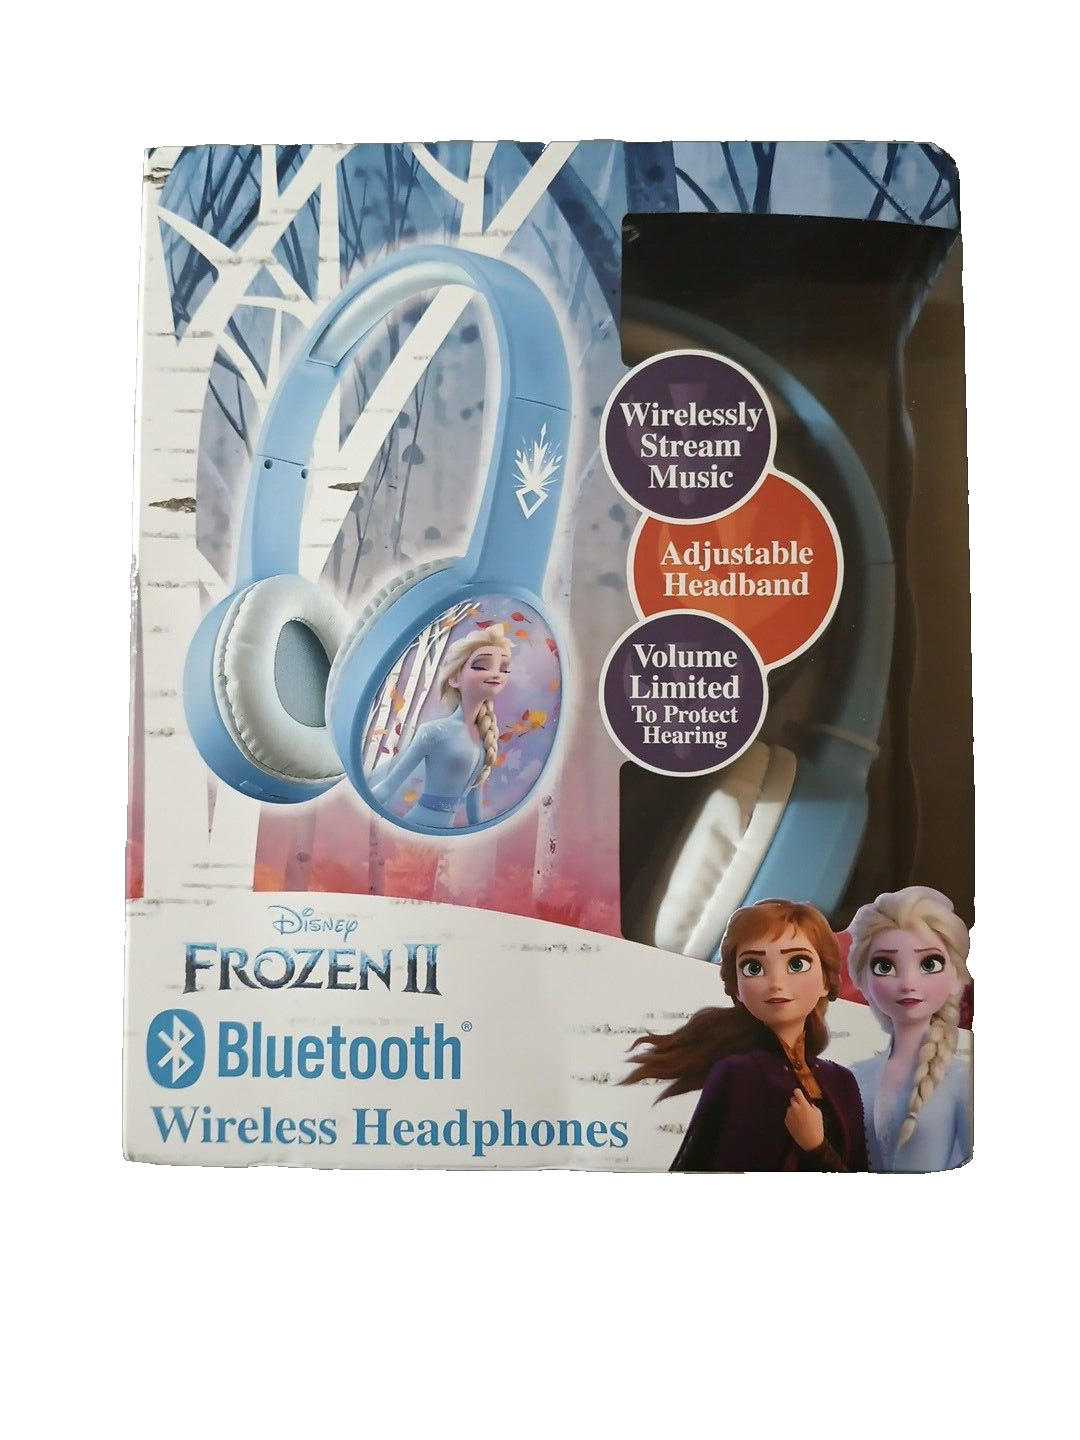  Disney Bluetooth Wireless Headphones Frozen II Youth Headphones